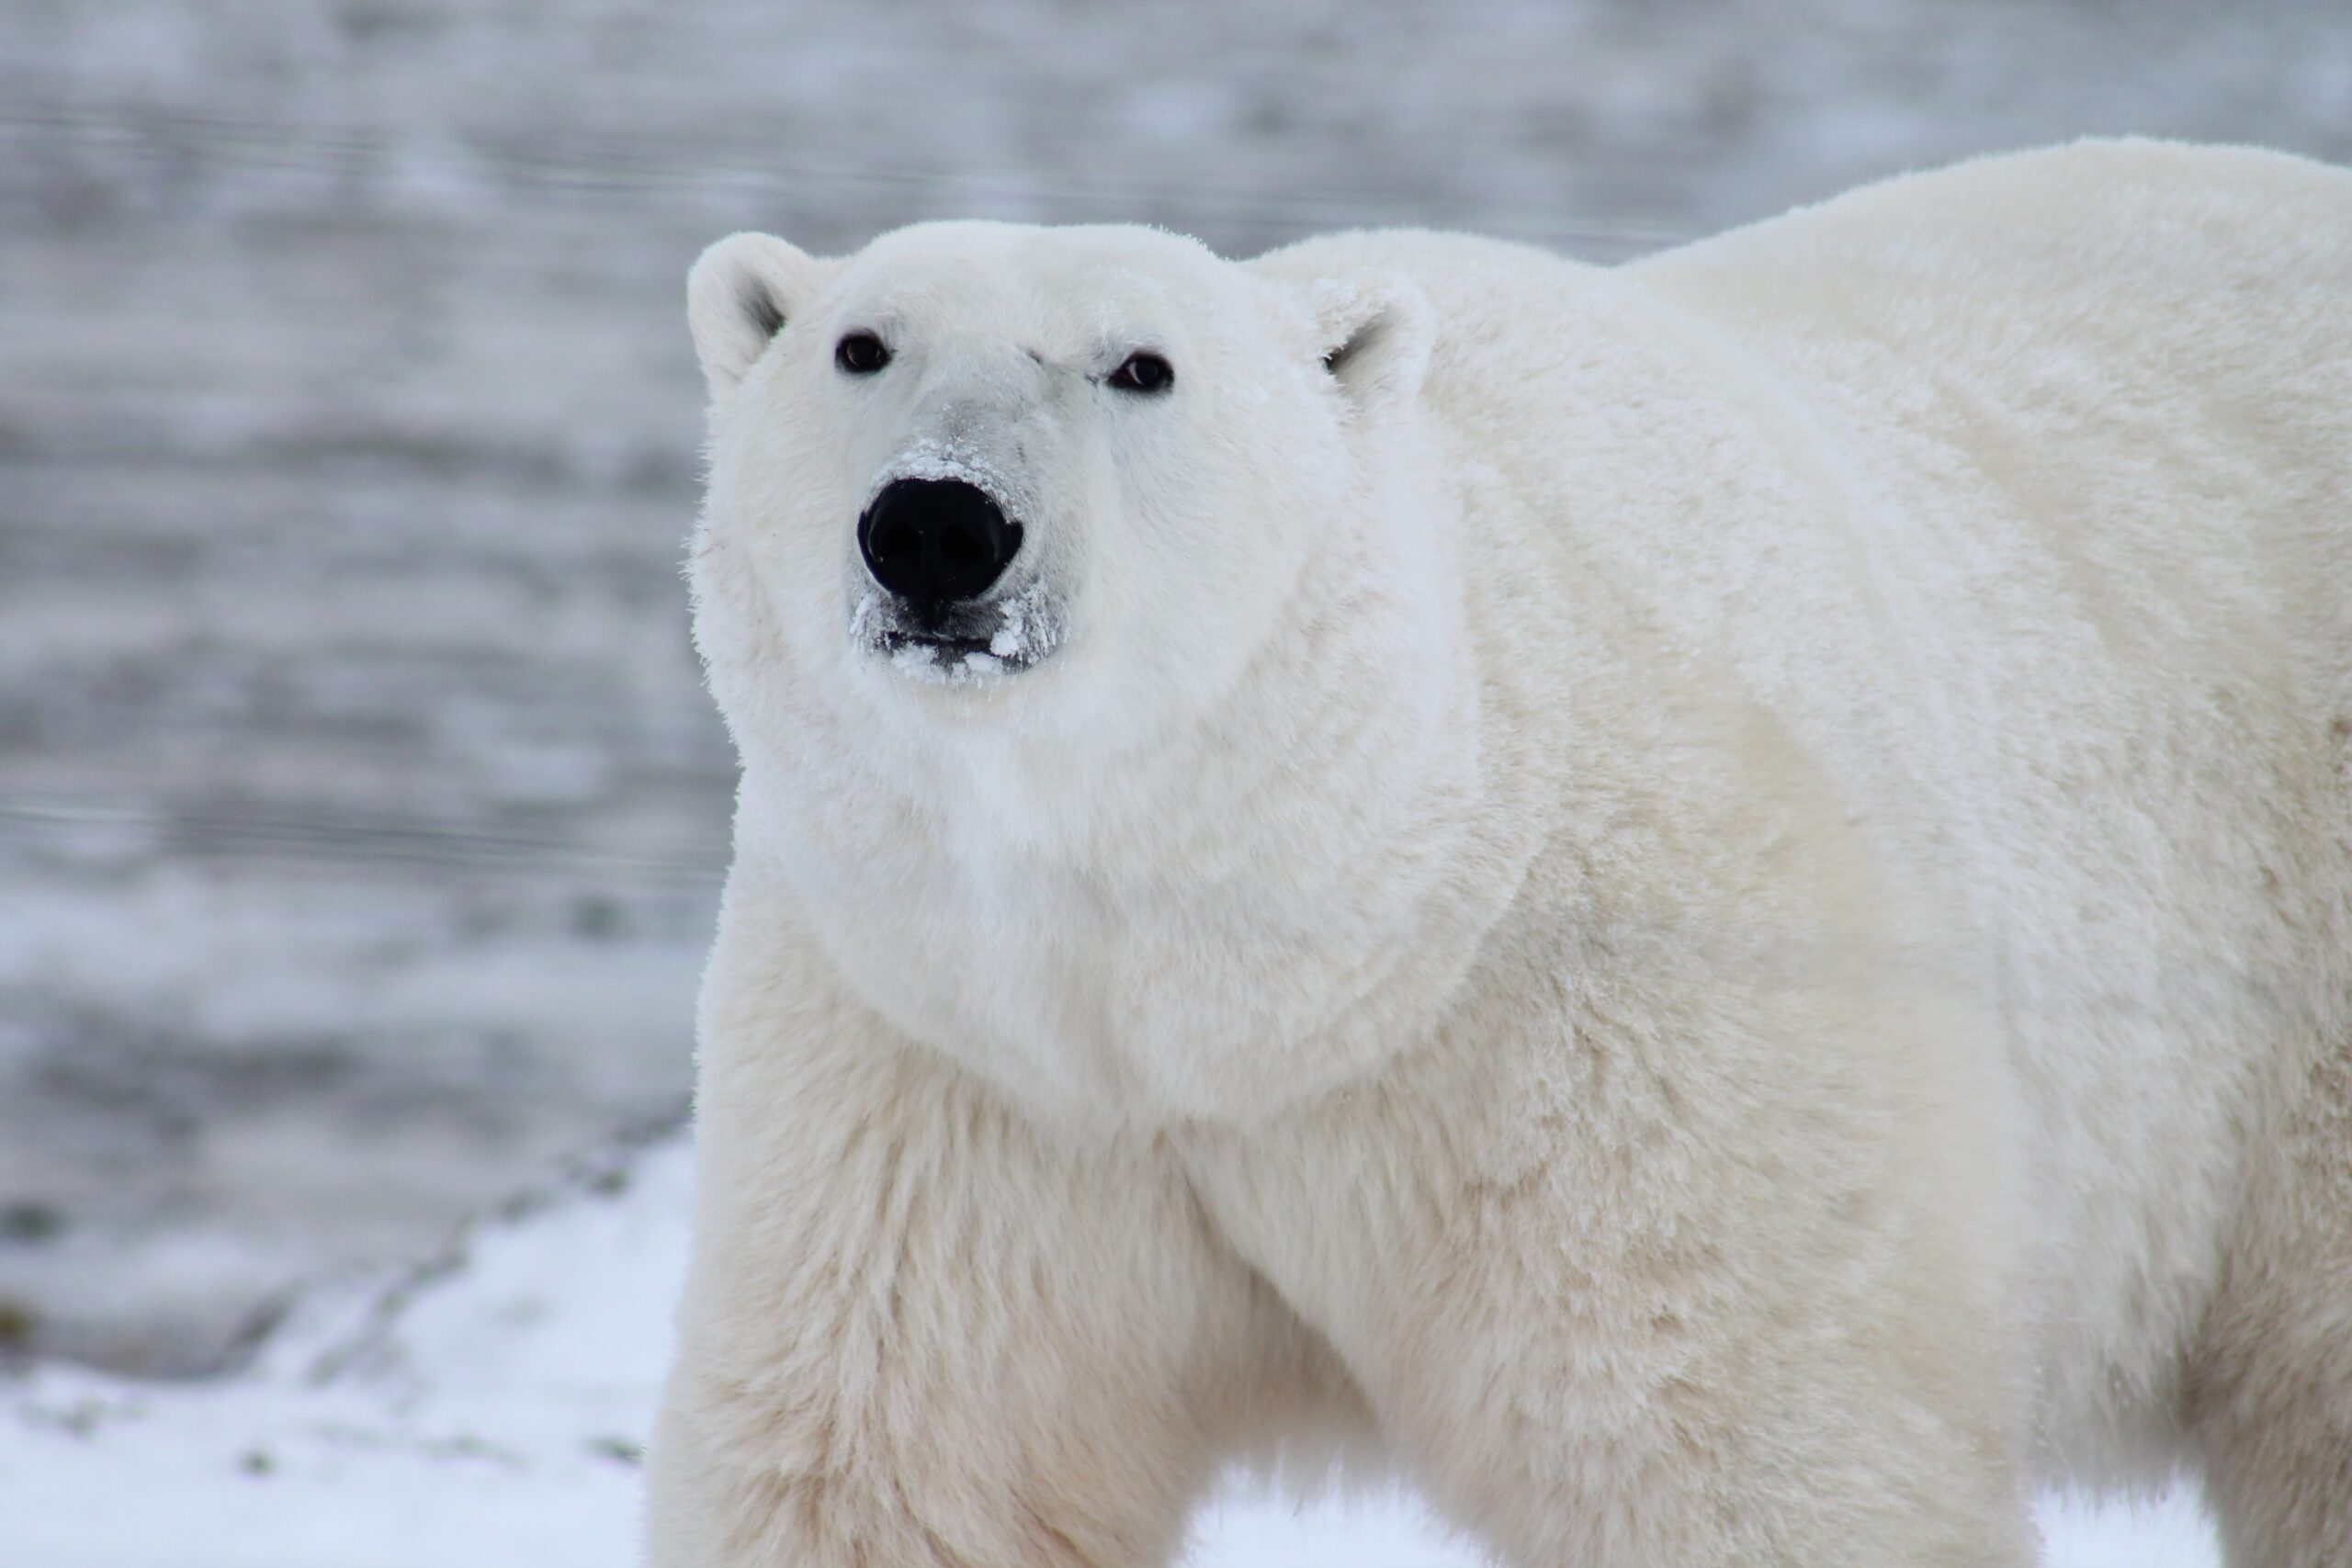 A polar bear stands against a gray, snowy backdrop.